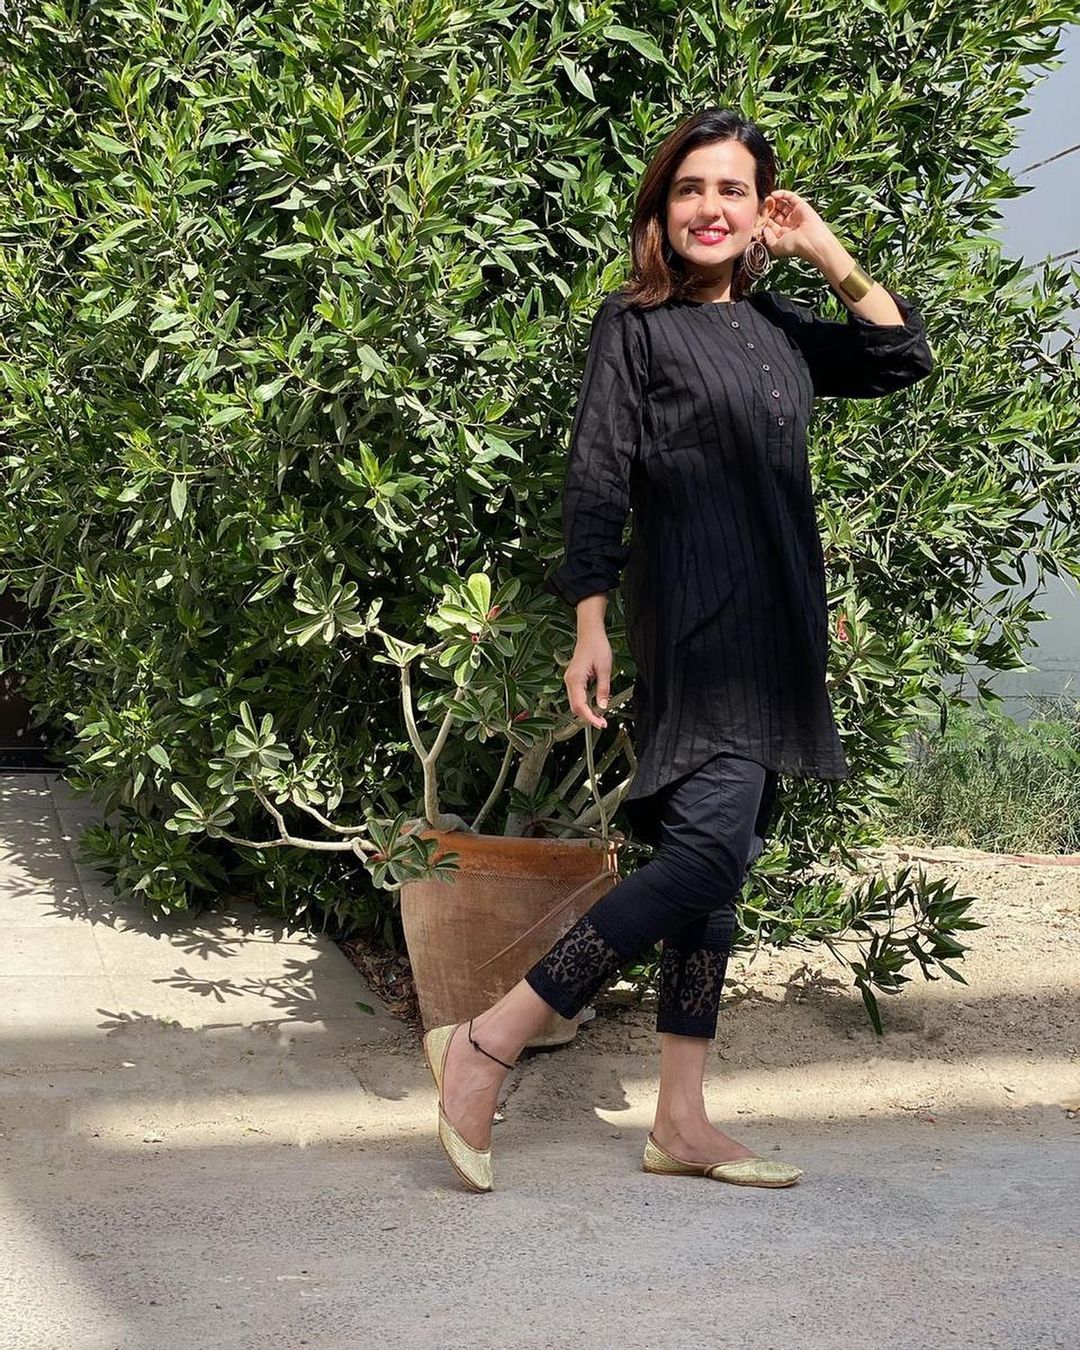 Pakistani Actress New fashion dress for Girls 2021, New Designer Dress images 2021, Dress Design images For Girl, New fashion dress for girl 2021, Dress Designs images 2021, New style dress for Girl, New Dress Design 2021 in Pakistan